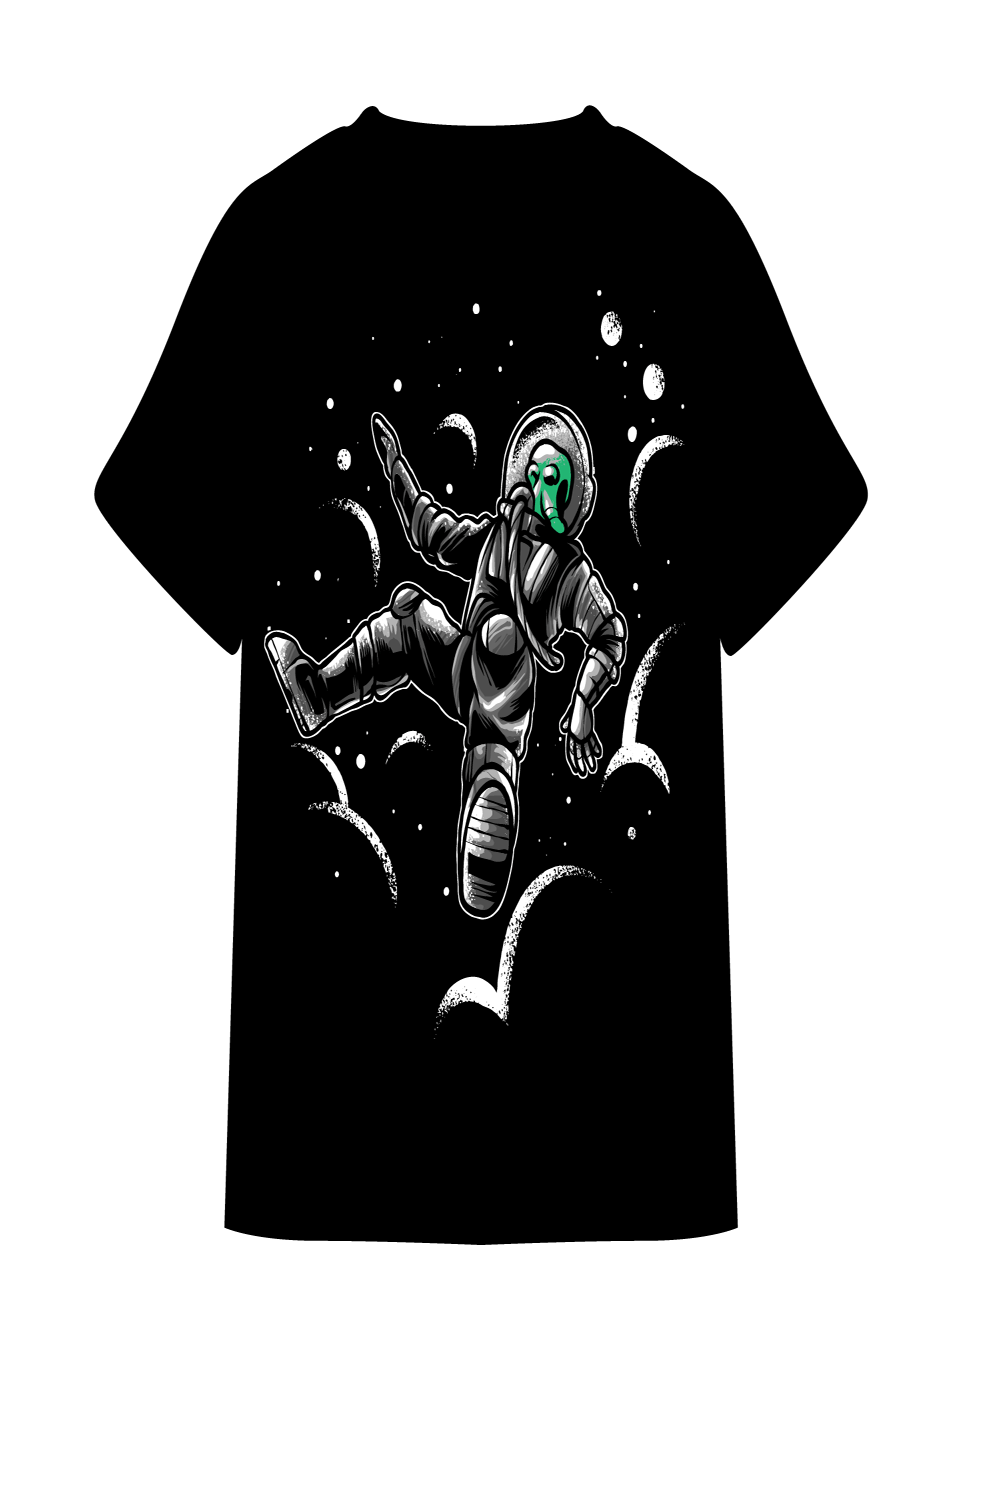 alien astronaut t-shirt pinterest preview image.